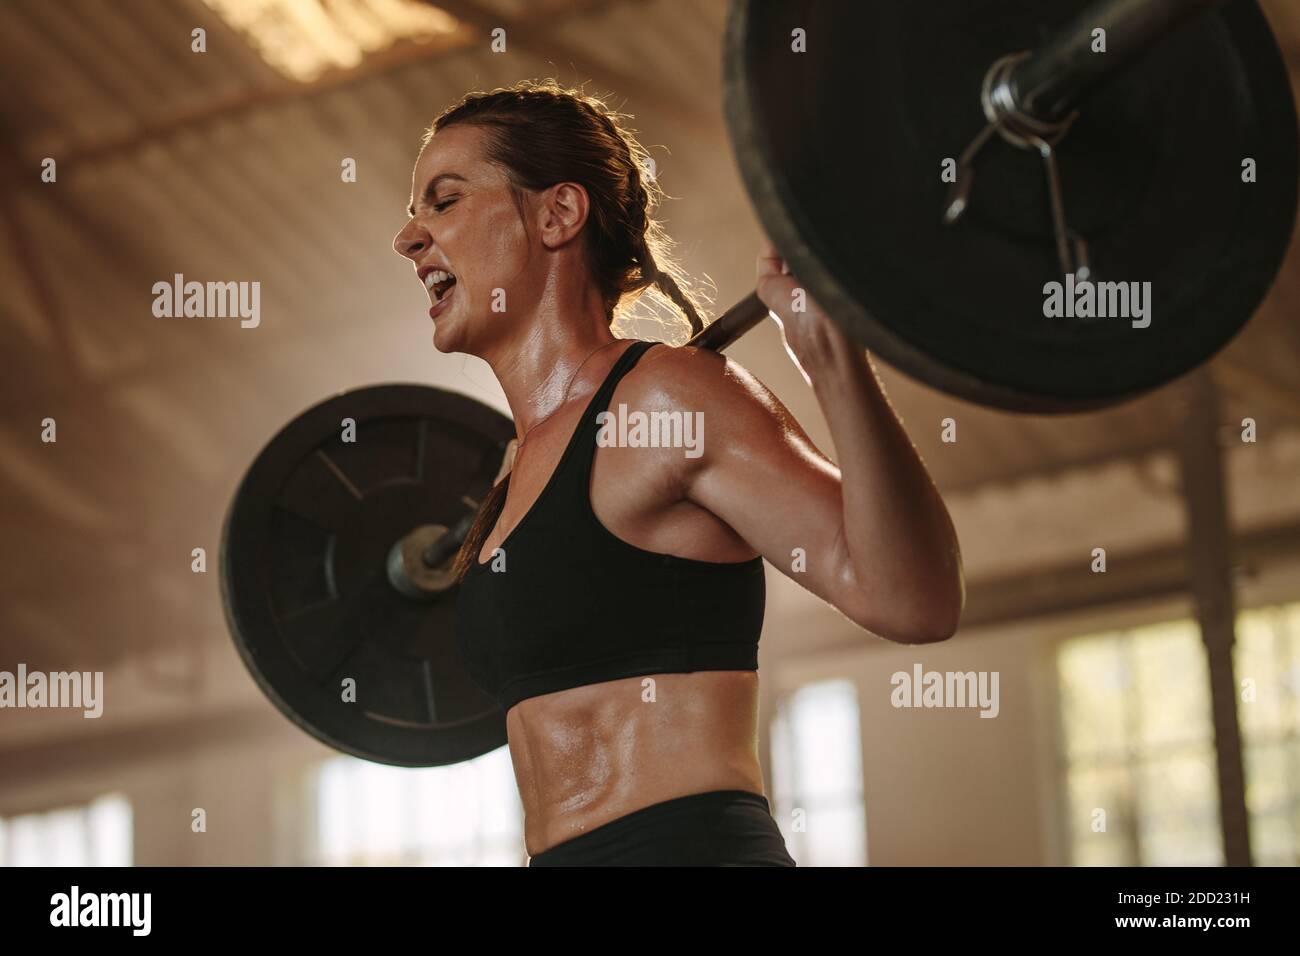 Weibliche Bodybuilderin, die Sport mit schwerer Gewichtsstange macht. Fitness-Frau schwitzt beim Squats-Workout im Fitnessstudio. Weibliche Anstrengung und Schreien während Stockfoto